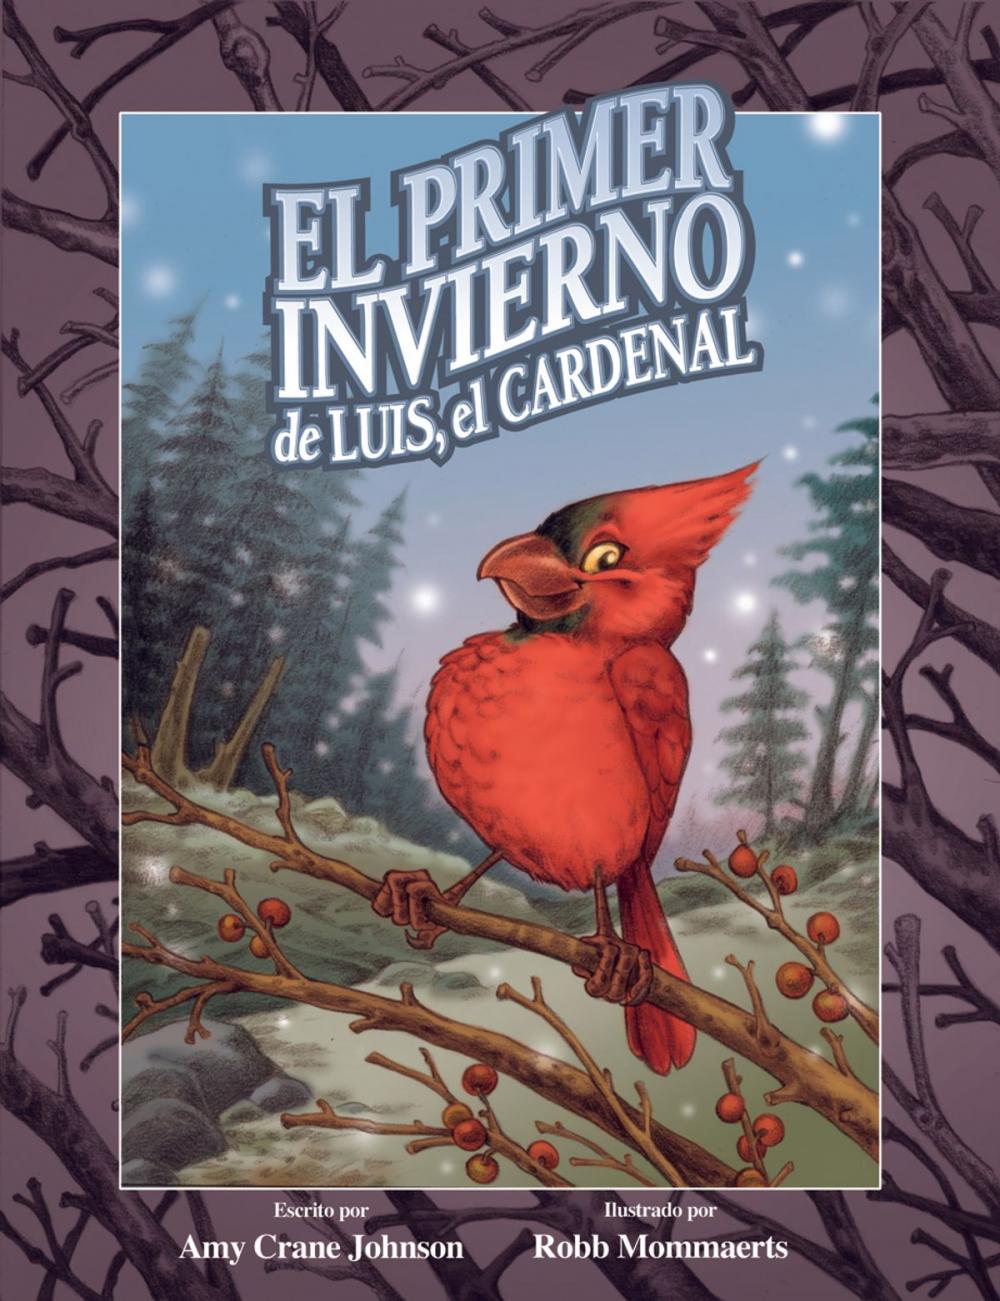 Big bigCover of El primer invierno de Luis, el cardenal